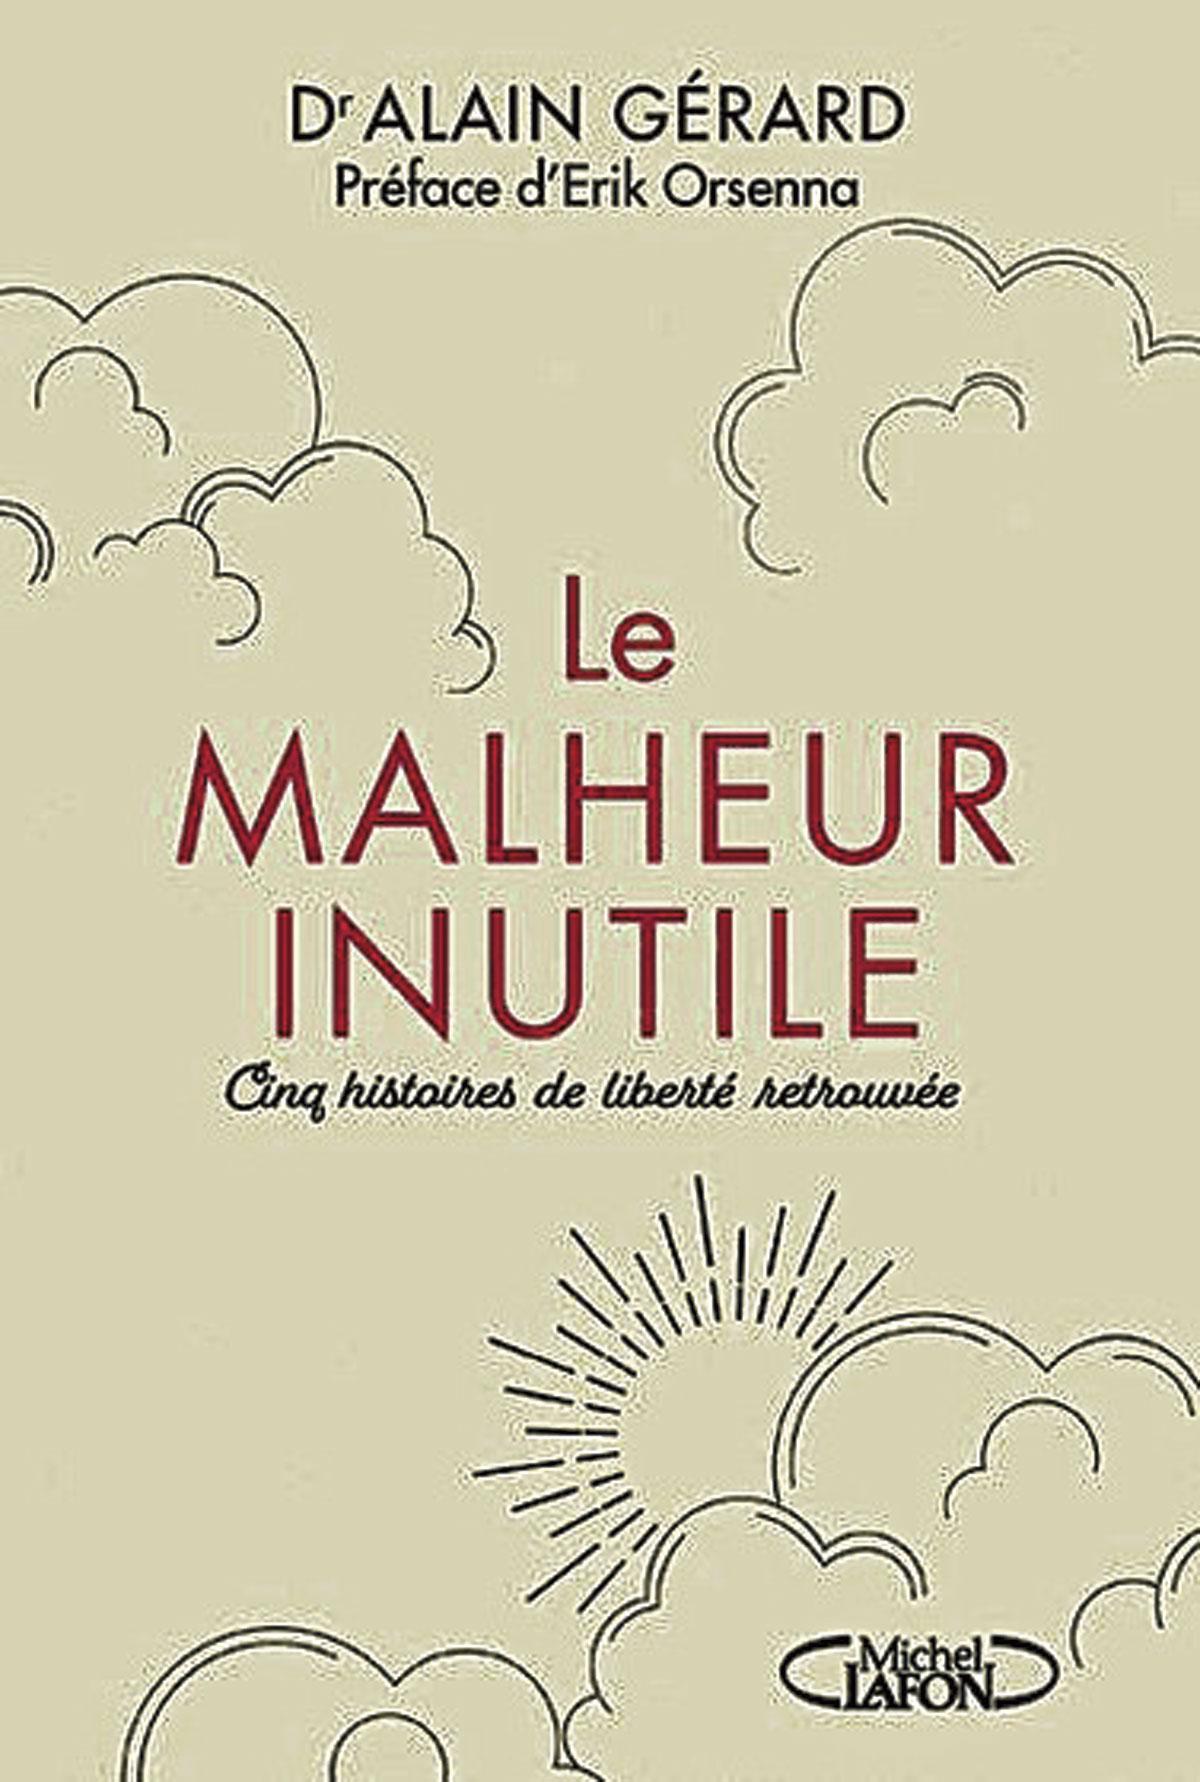 (1) Le Malheur inutile. Cinq histoires de liberté retrouvée, par le Dr. Alain Gérard, 160 p., Michel Lafon.